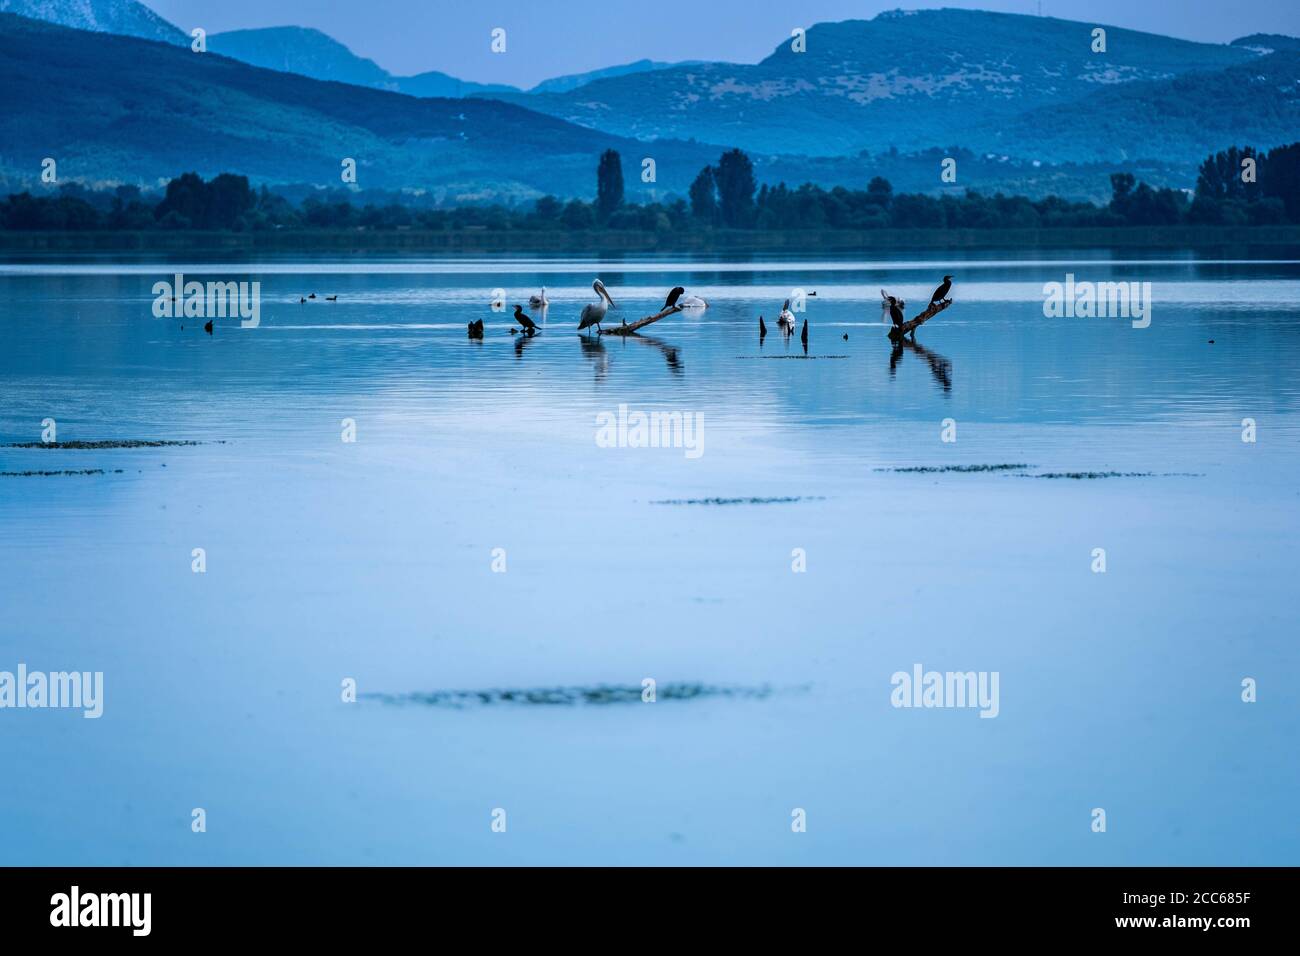 Fotografische Momentaufnahme, Szene aus dem See der Stadt Ioannina mit dem Namen Pamvotida. Verschiedene Wasservögel sitzen auf getrockneten Zweigen im See. Stockfoto